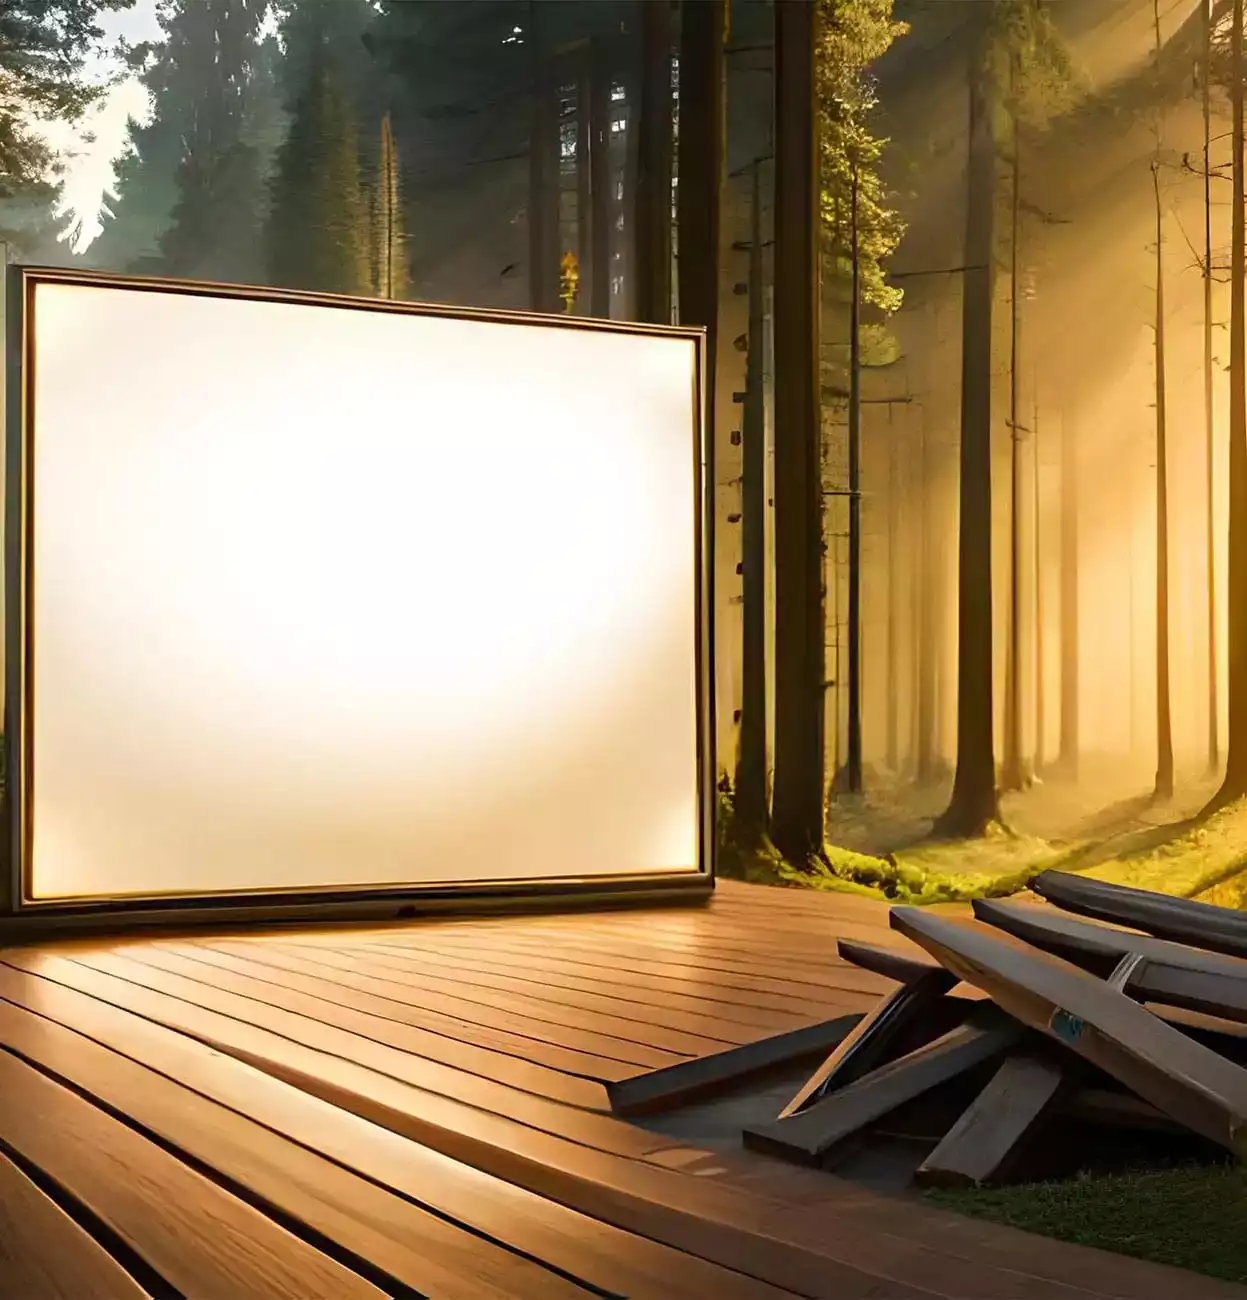 Ένα σουρεαλιστικό σκηνικό με μια μεγάλη οθόνη cinema μέσα σε ένα δάσος.